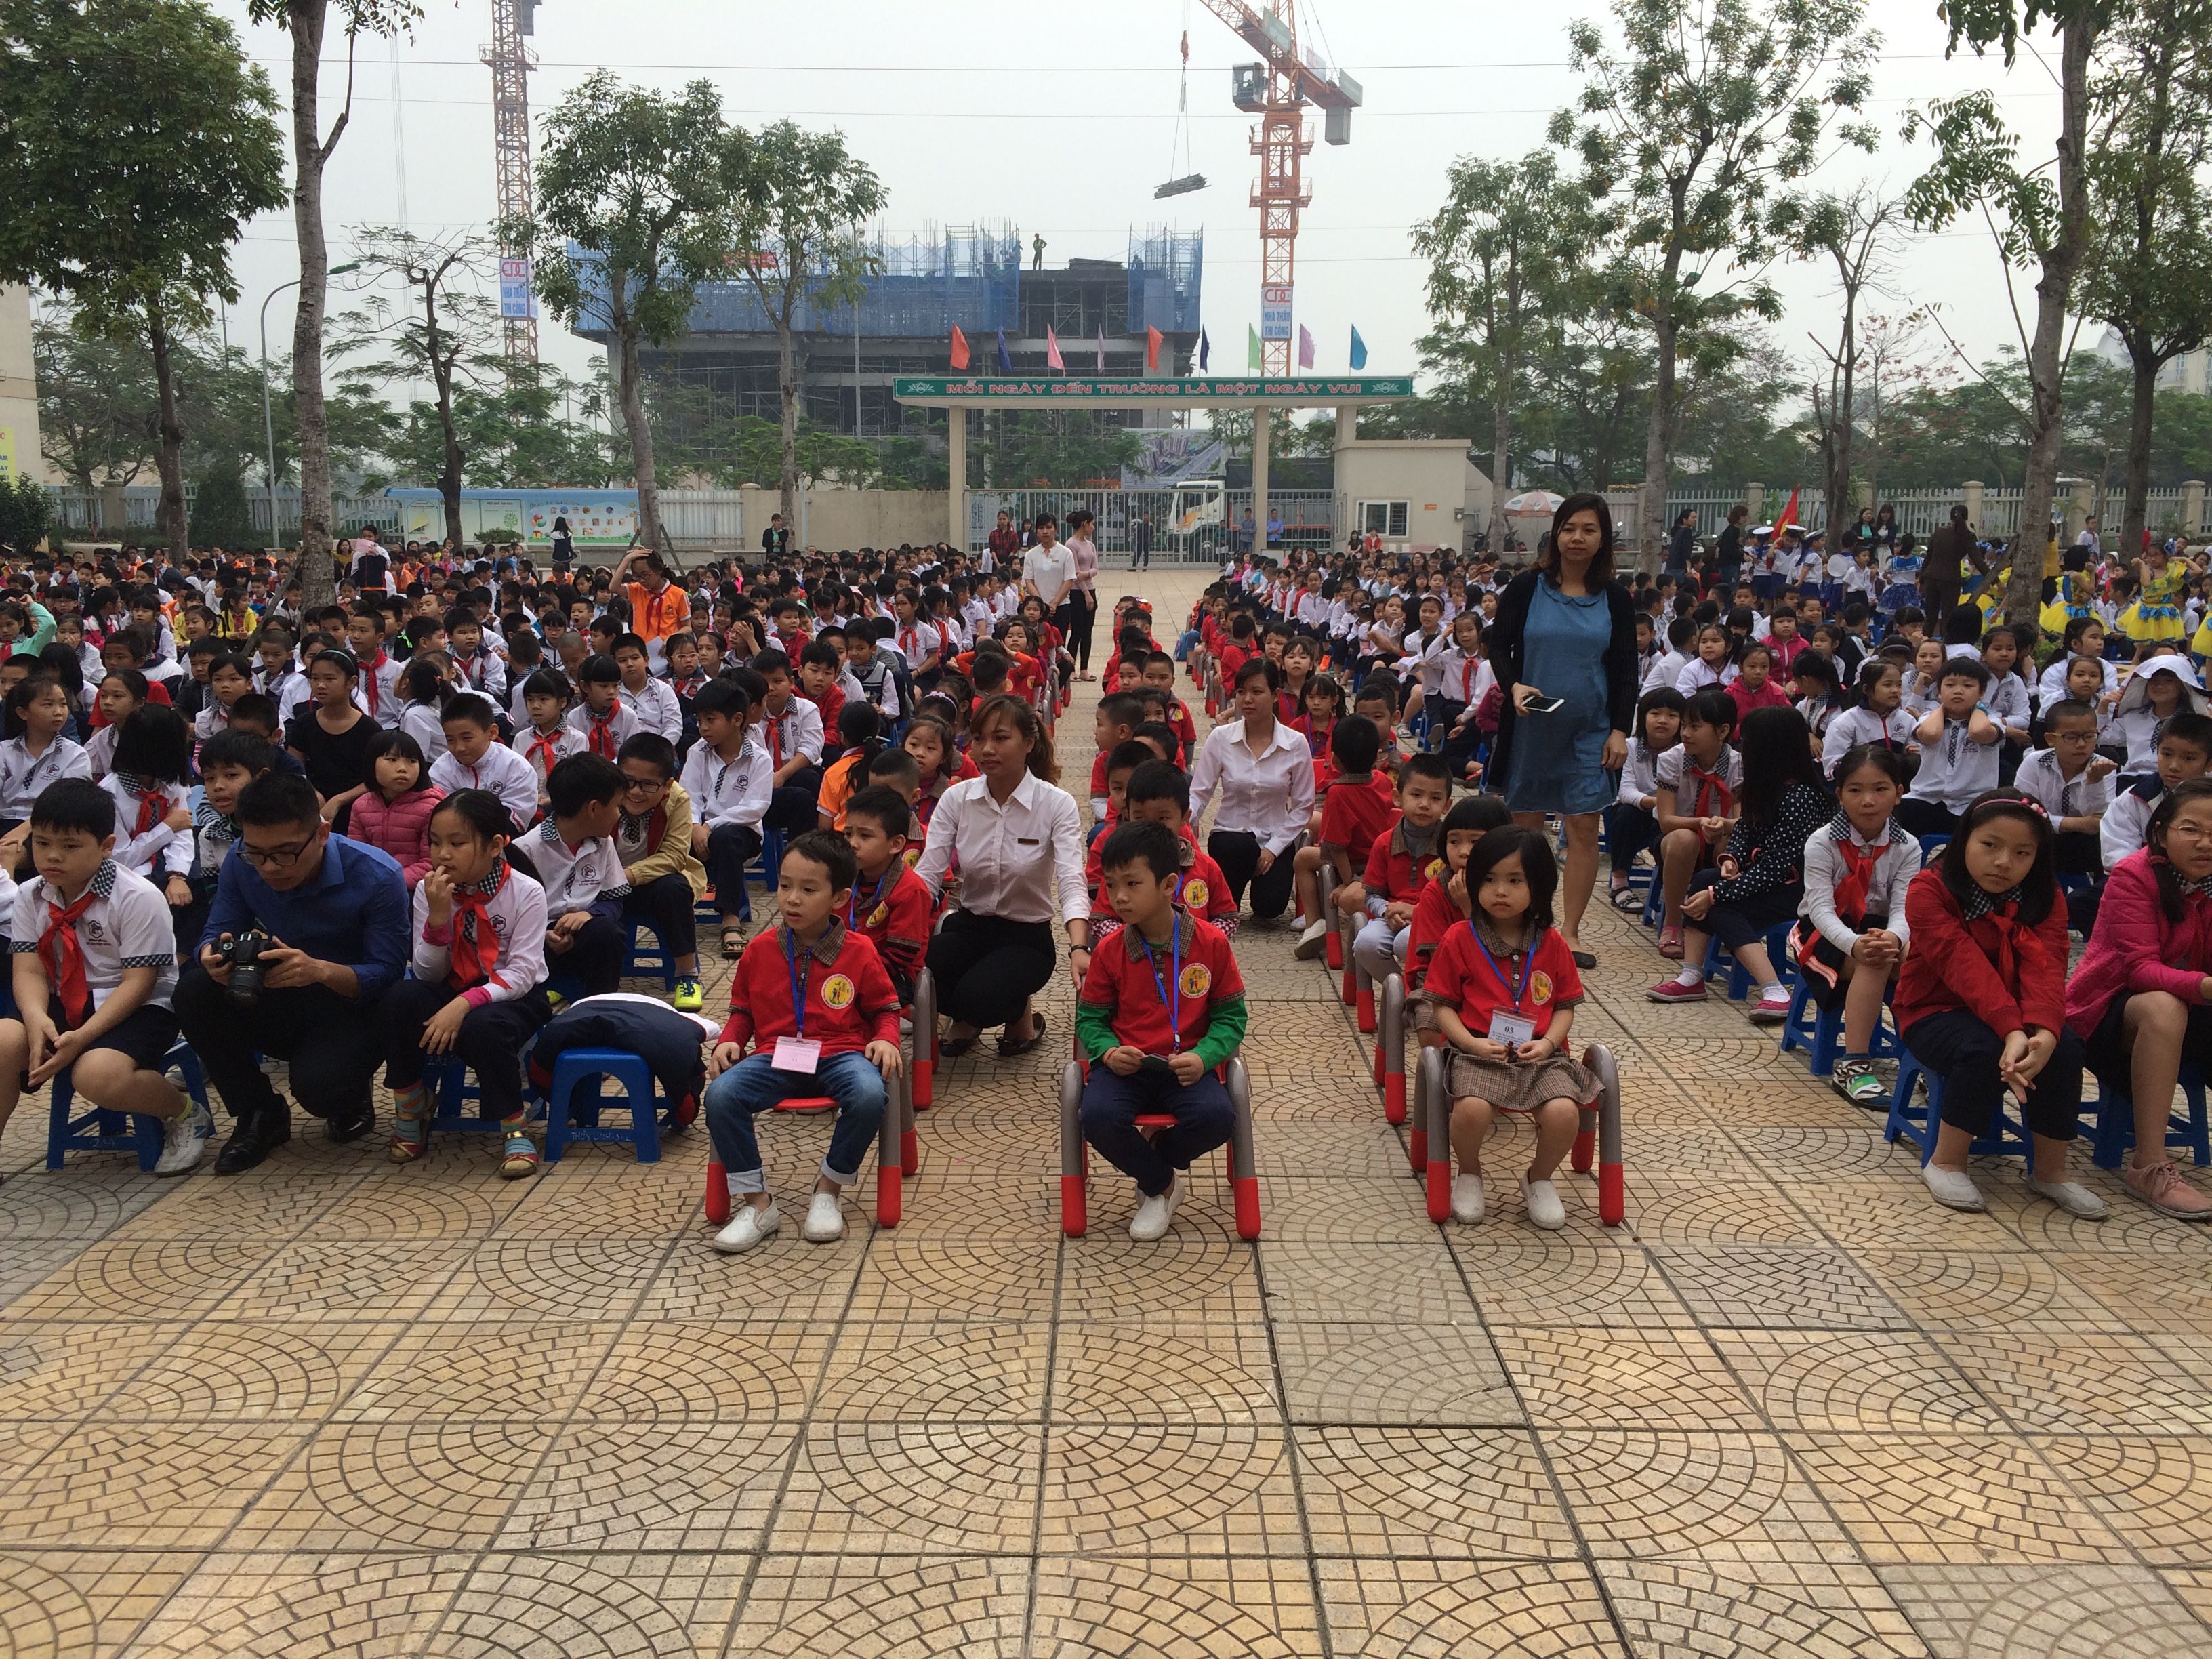 Khối mẫu giáo lớn giao lưu tại trường tiểu học Đô thị Việt hưng (2).jpg